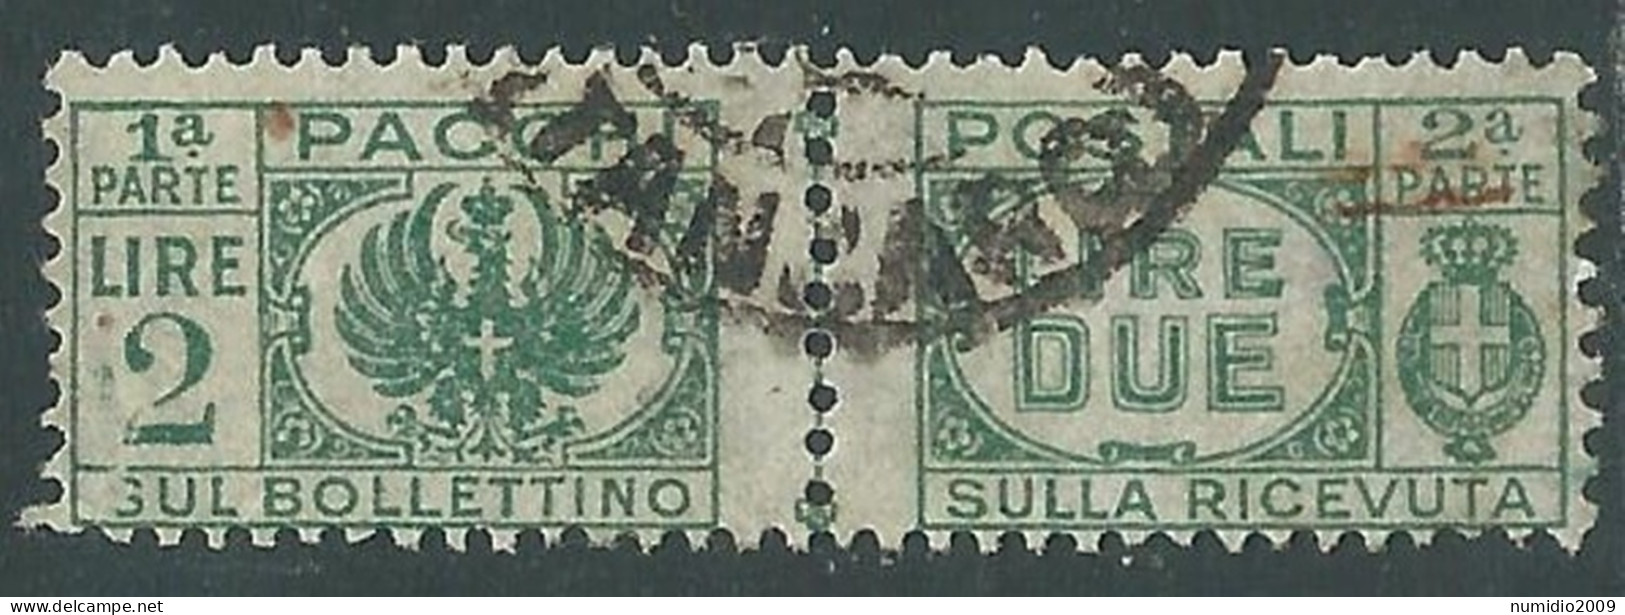 1946 LUOGOTENENZA PACCHI POSTALI USATO 2 LIRE - I18-9 - Postpaketten